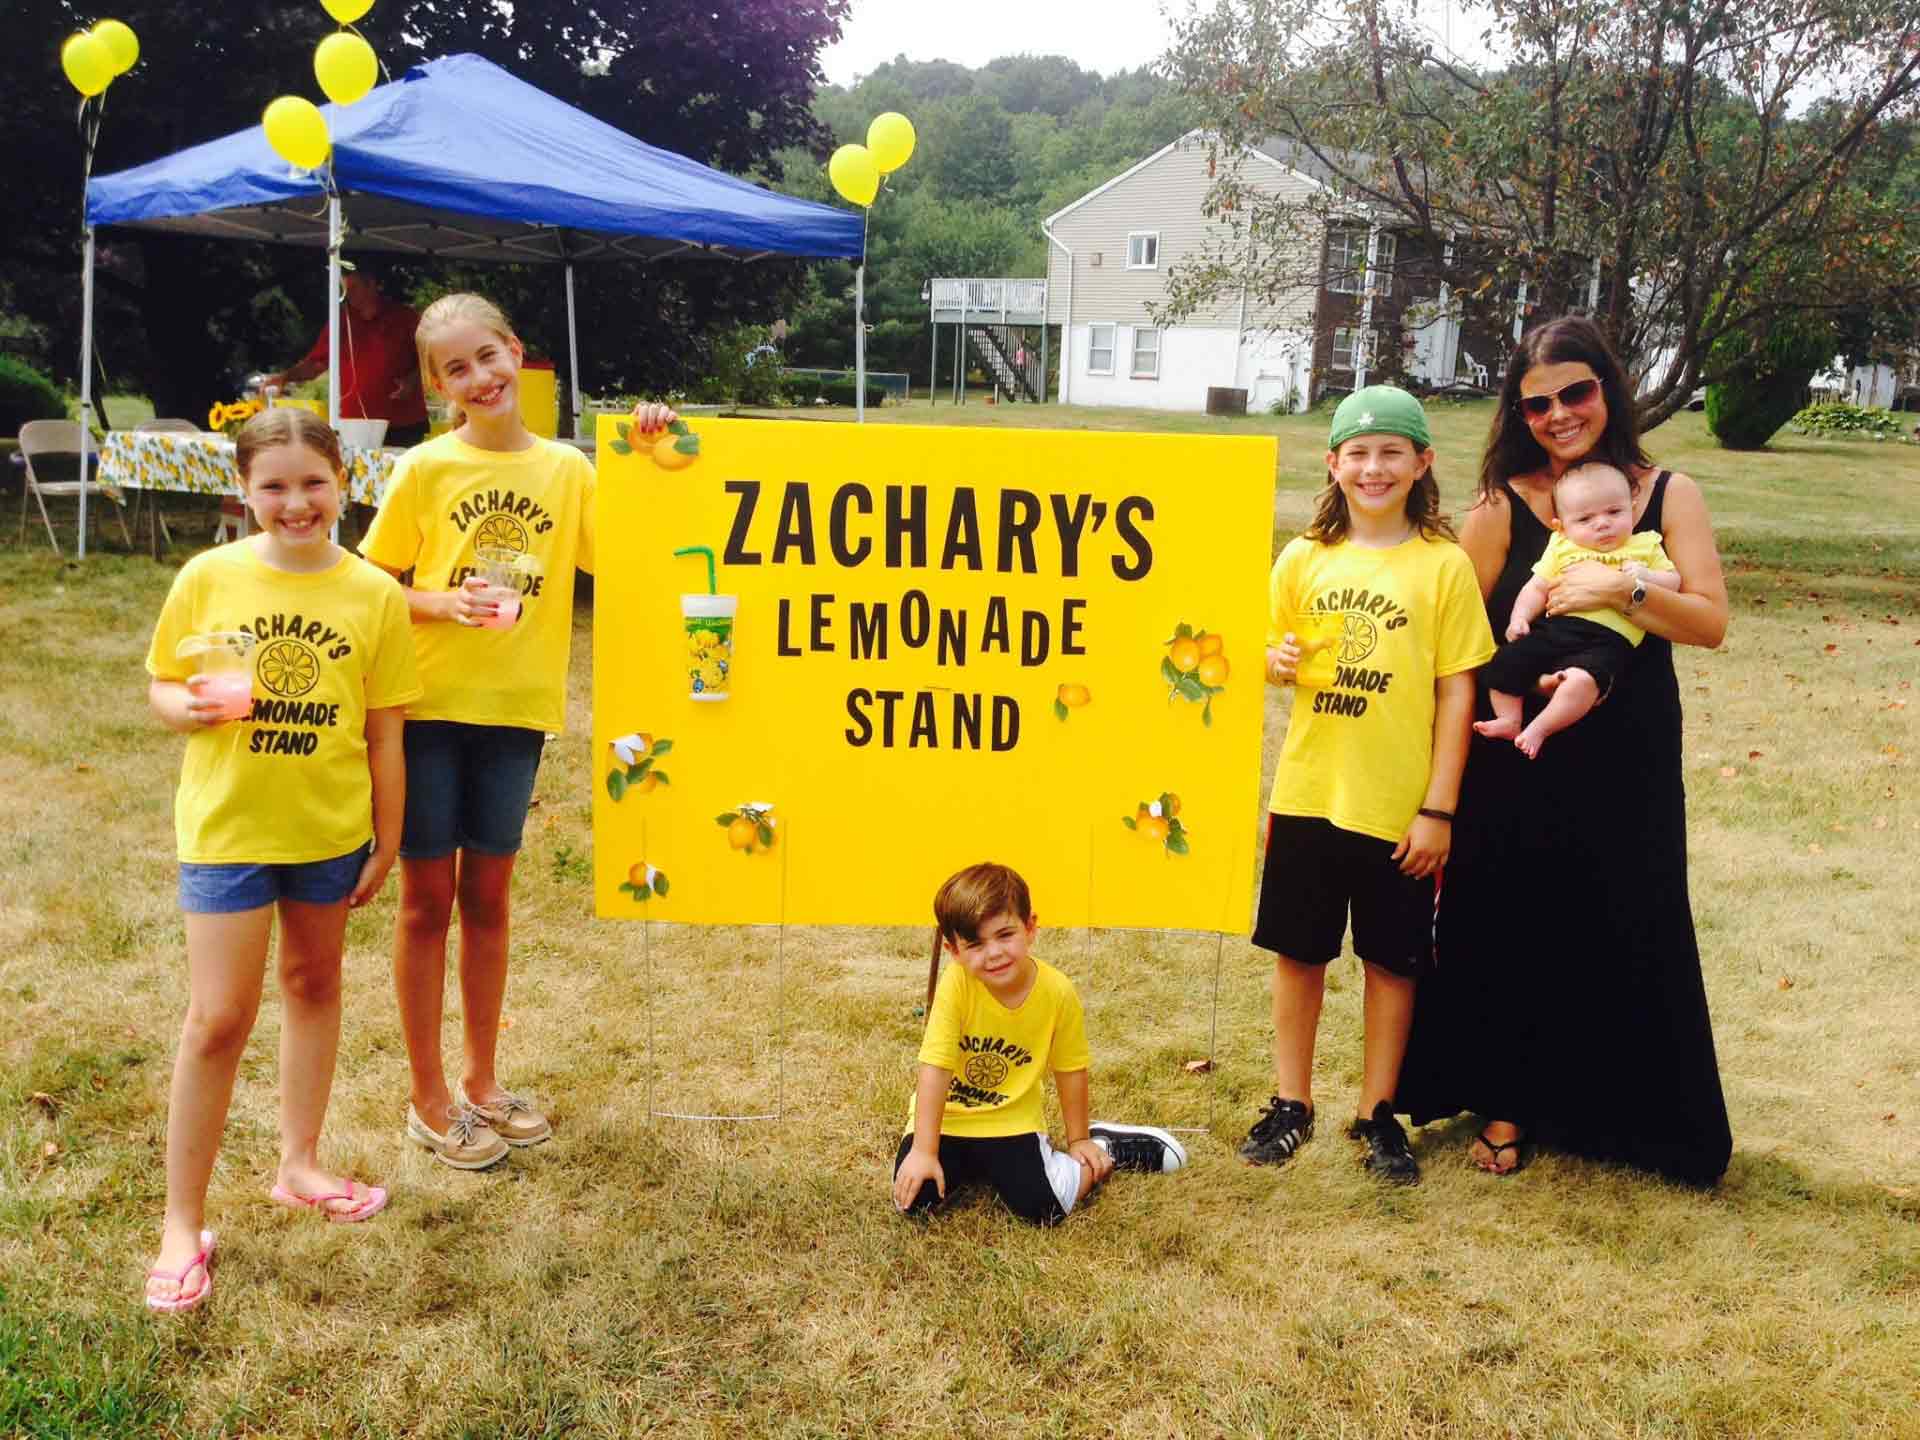 Zachary's Lemonade Stand